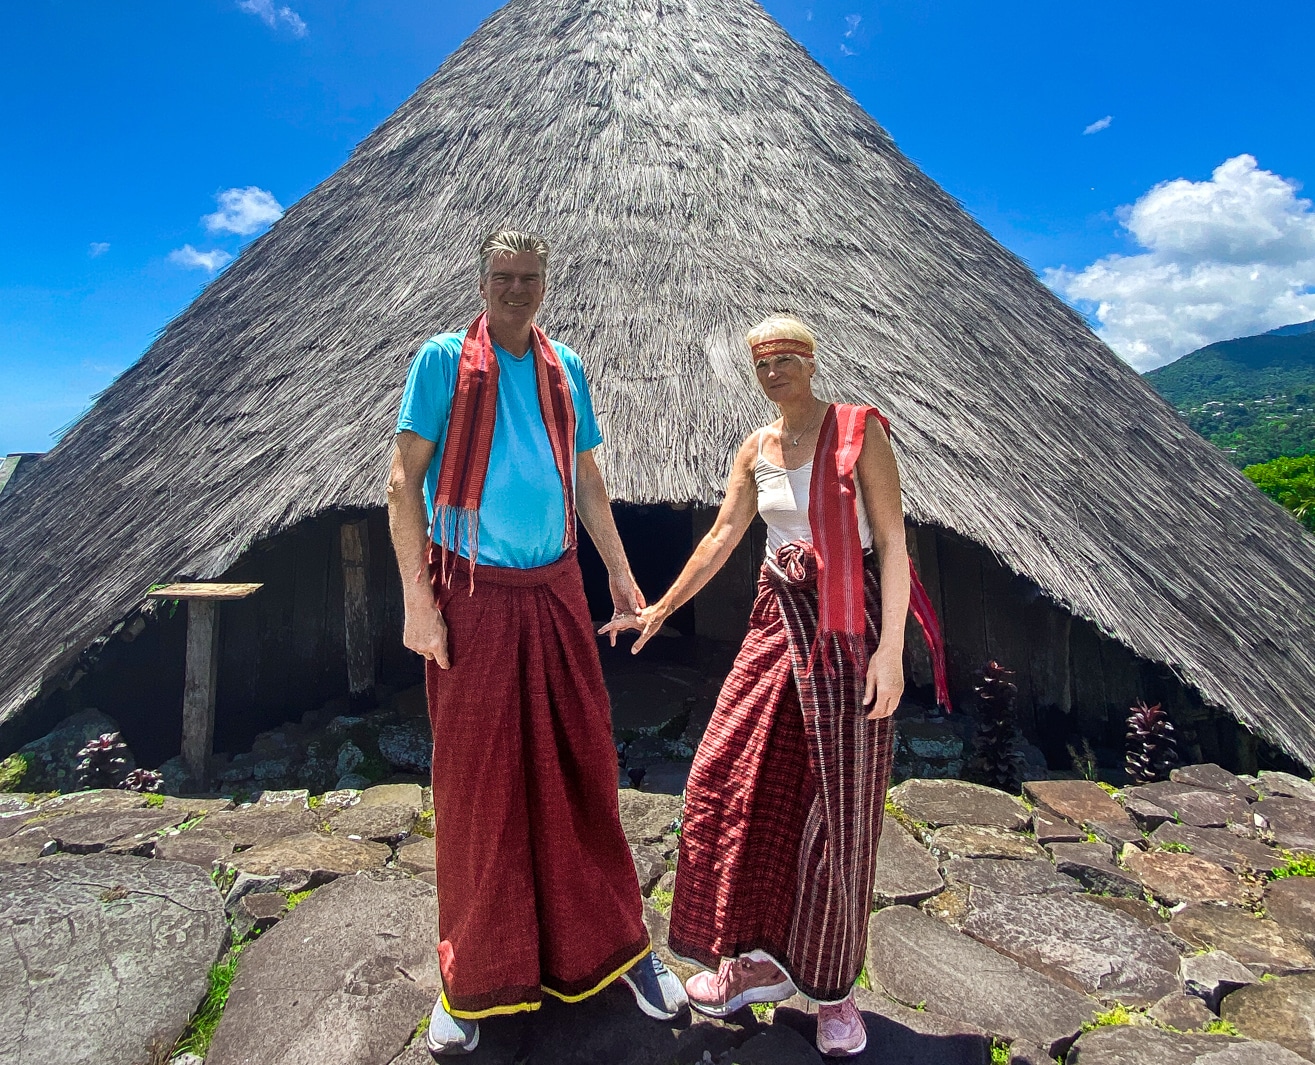 Liburan empat bulan: Hassperger Brett dan Thomas Wessel melakukan perjalanan sebagai ‘Pengembara Besar’ di Asia Tenggara